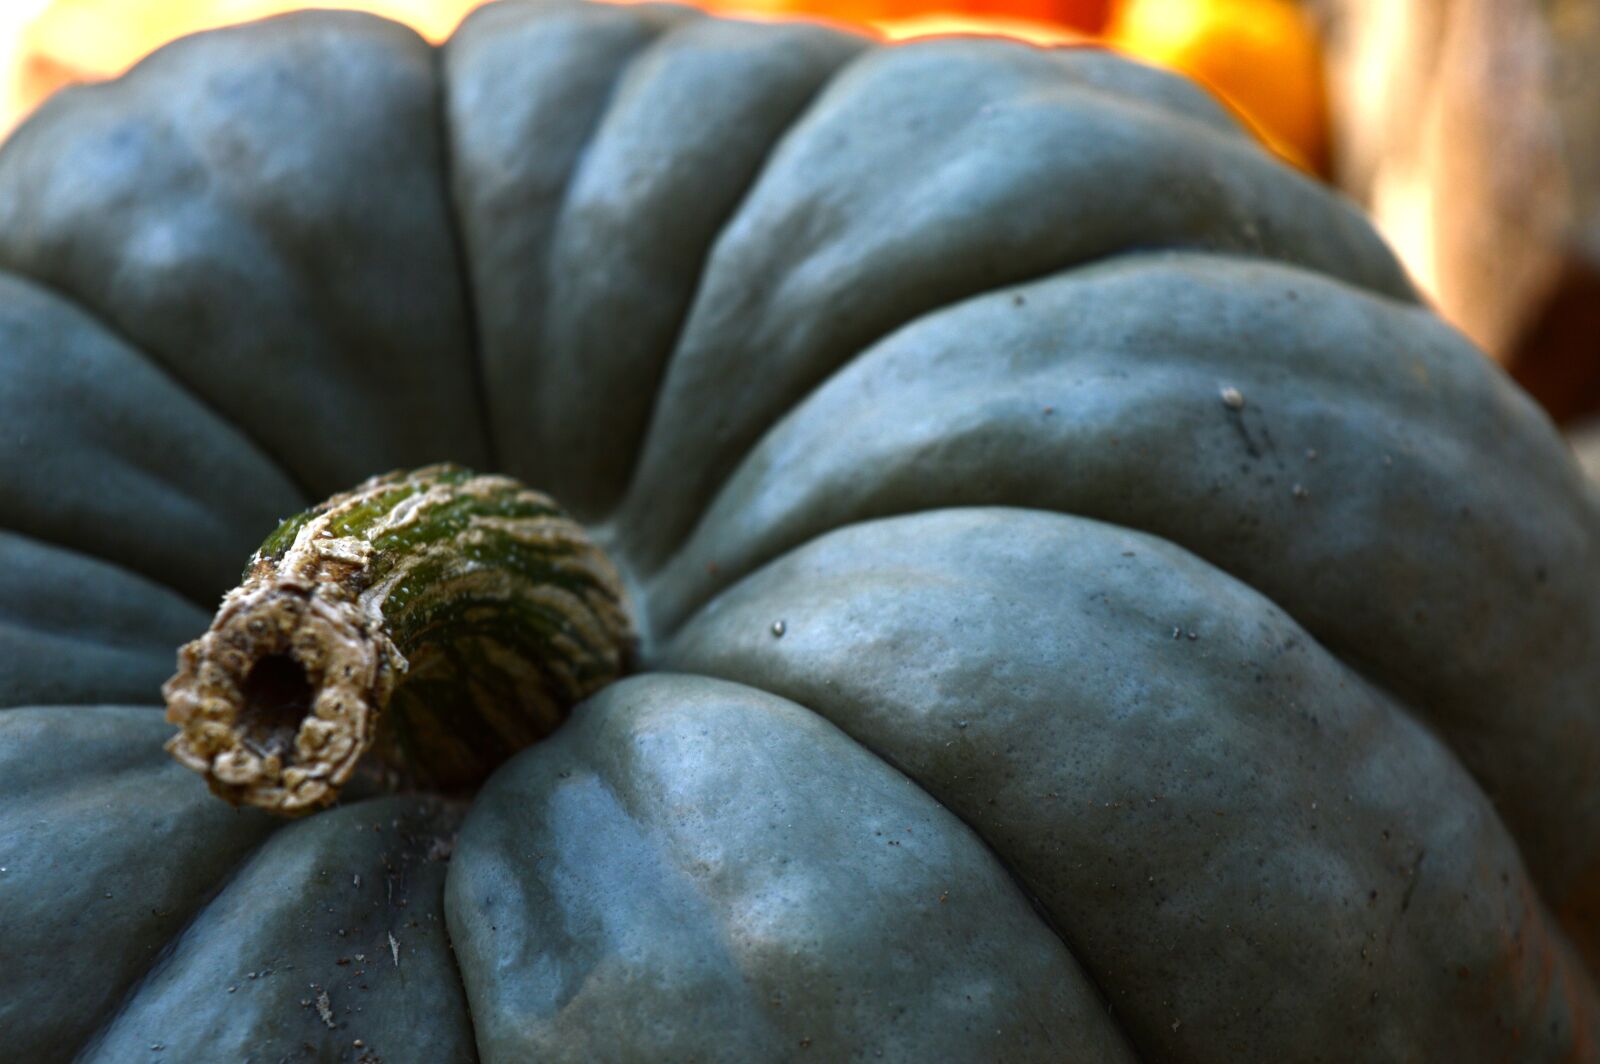 Nikon D3200 sample photo. Pumpkins, october, autumn photography